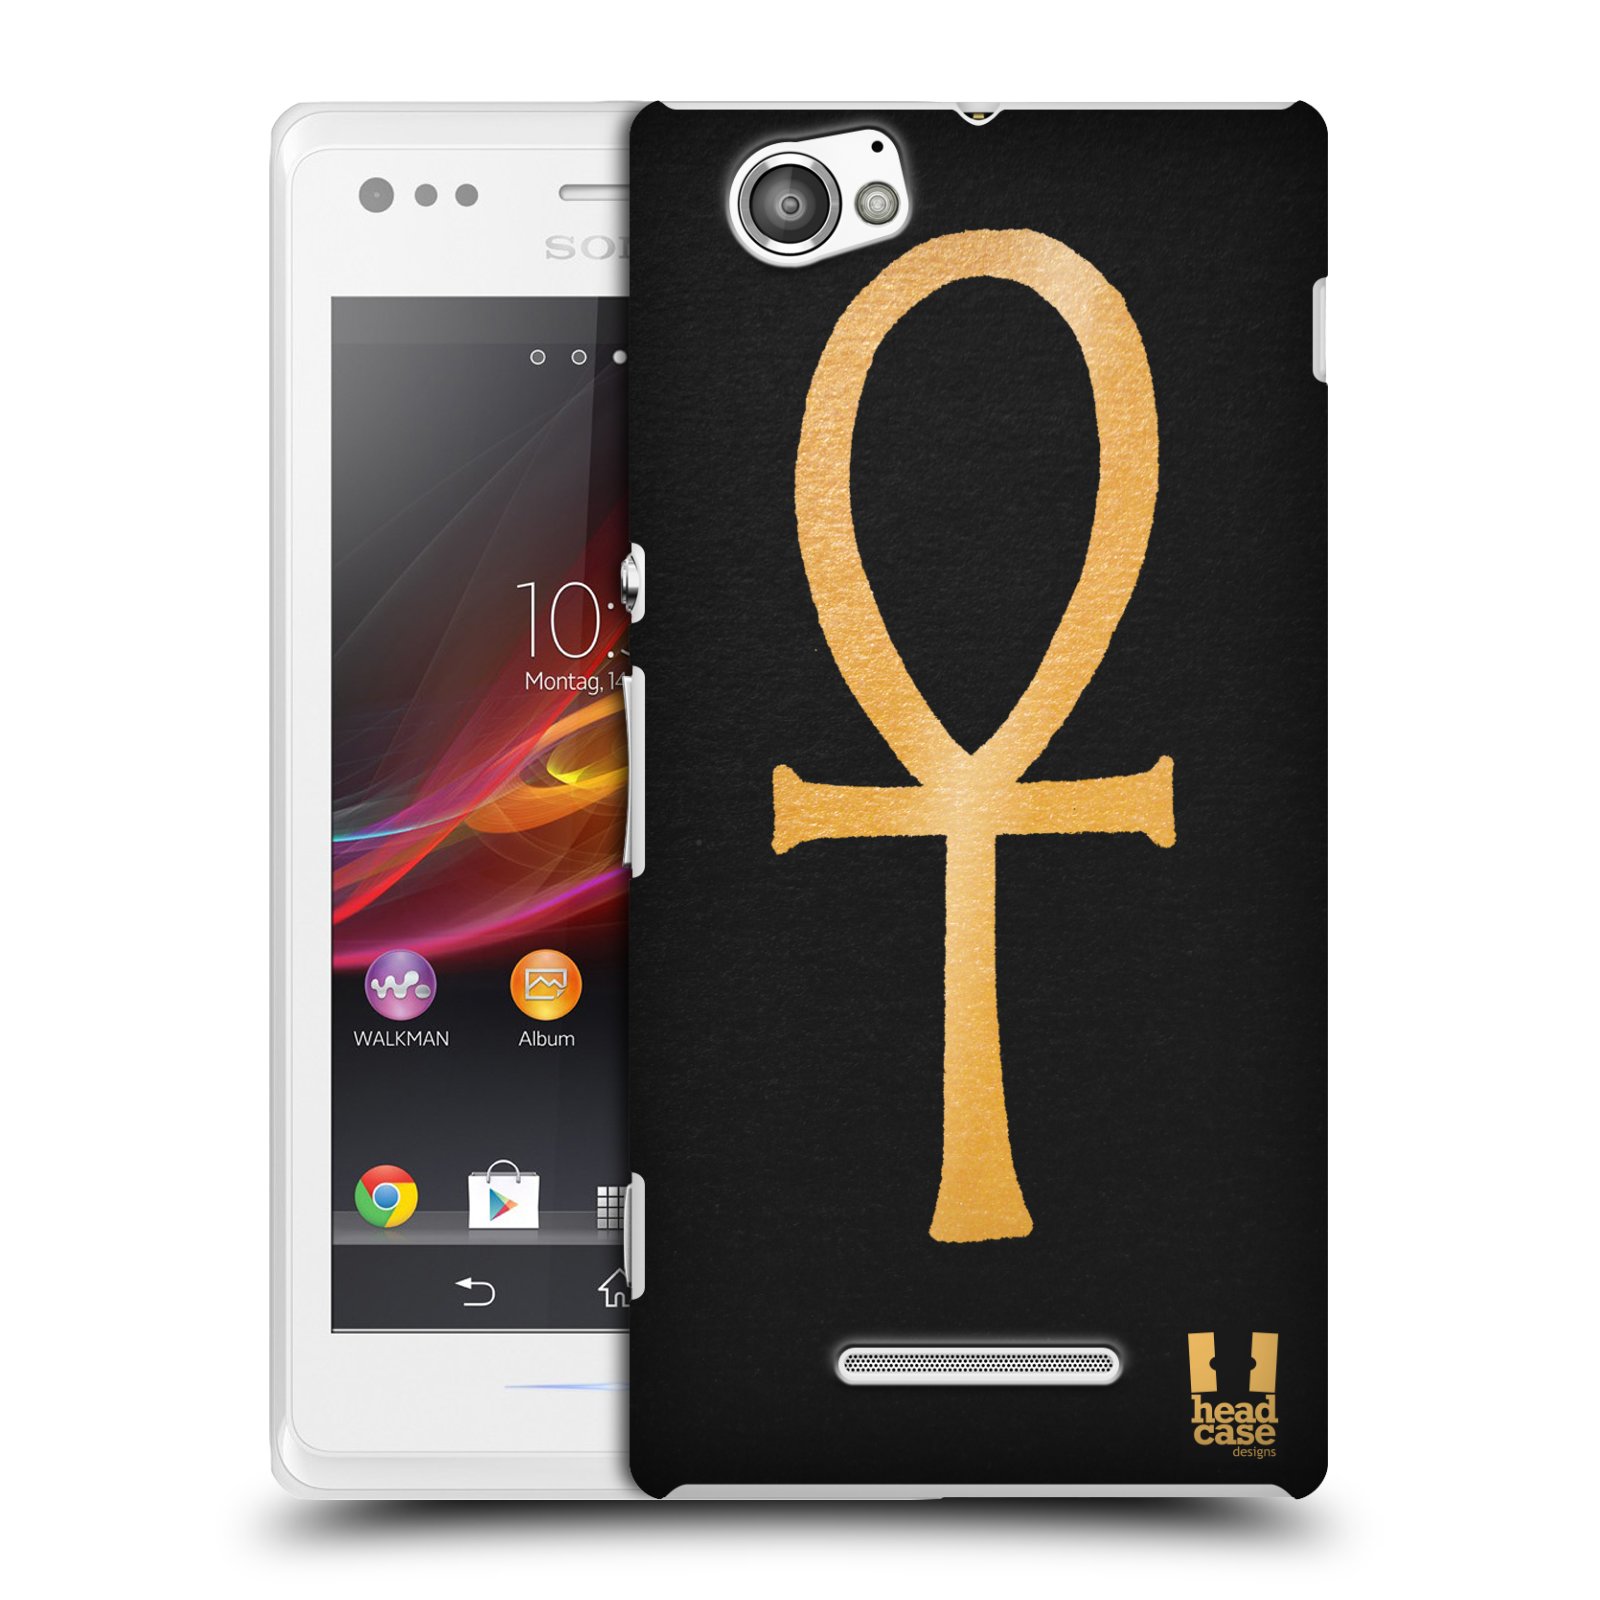 HEAD CASE plastový obal na mobil Sony Xperia M vzor EGYPT zlatá a černá SYMBOL ŽIVOTA